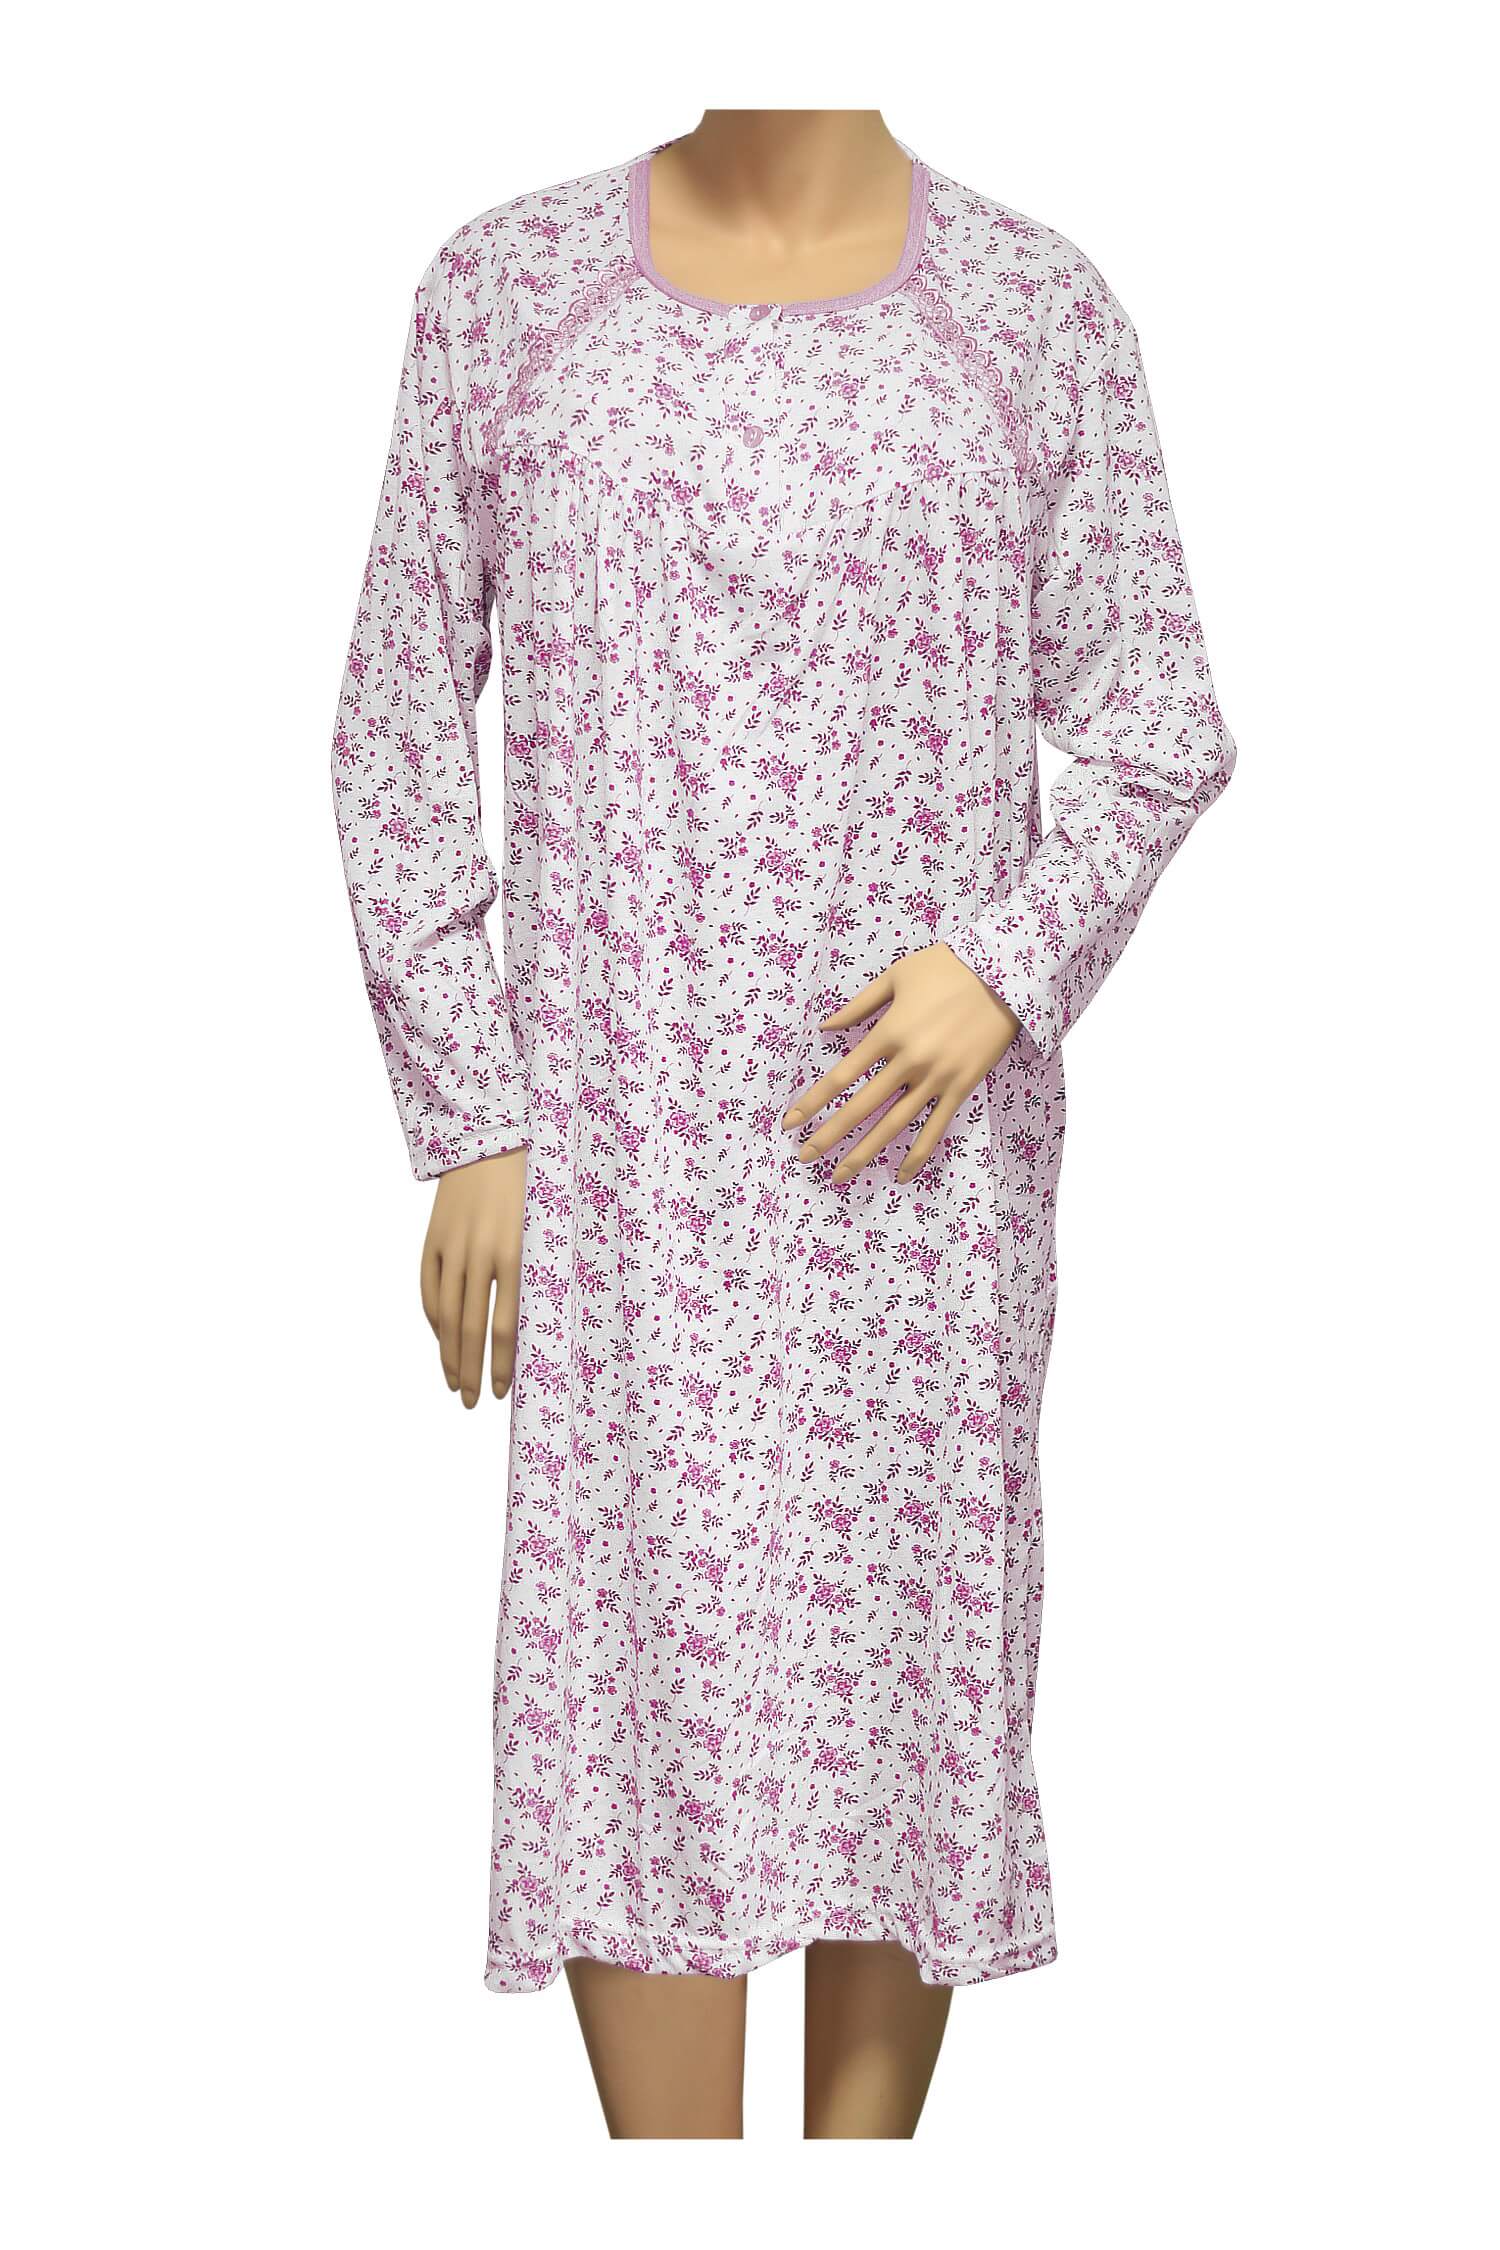 Karina dámská noční košile 1008 XL růžová